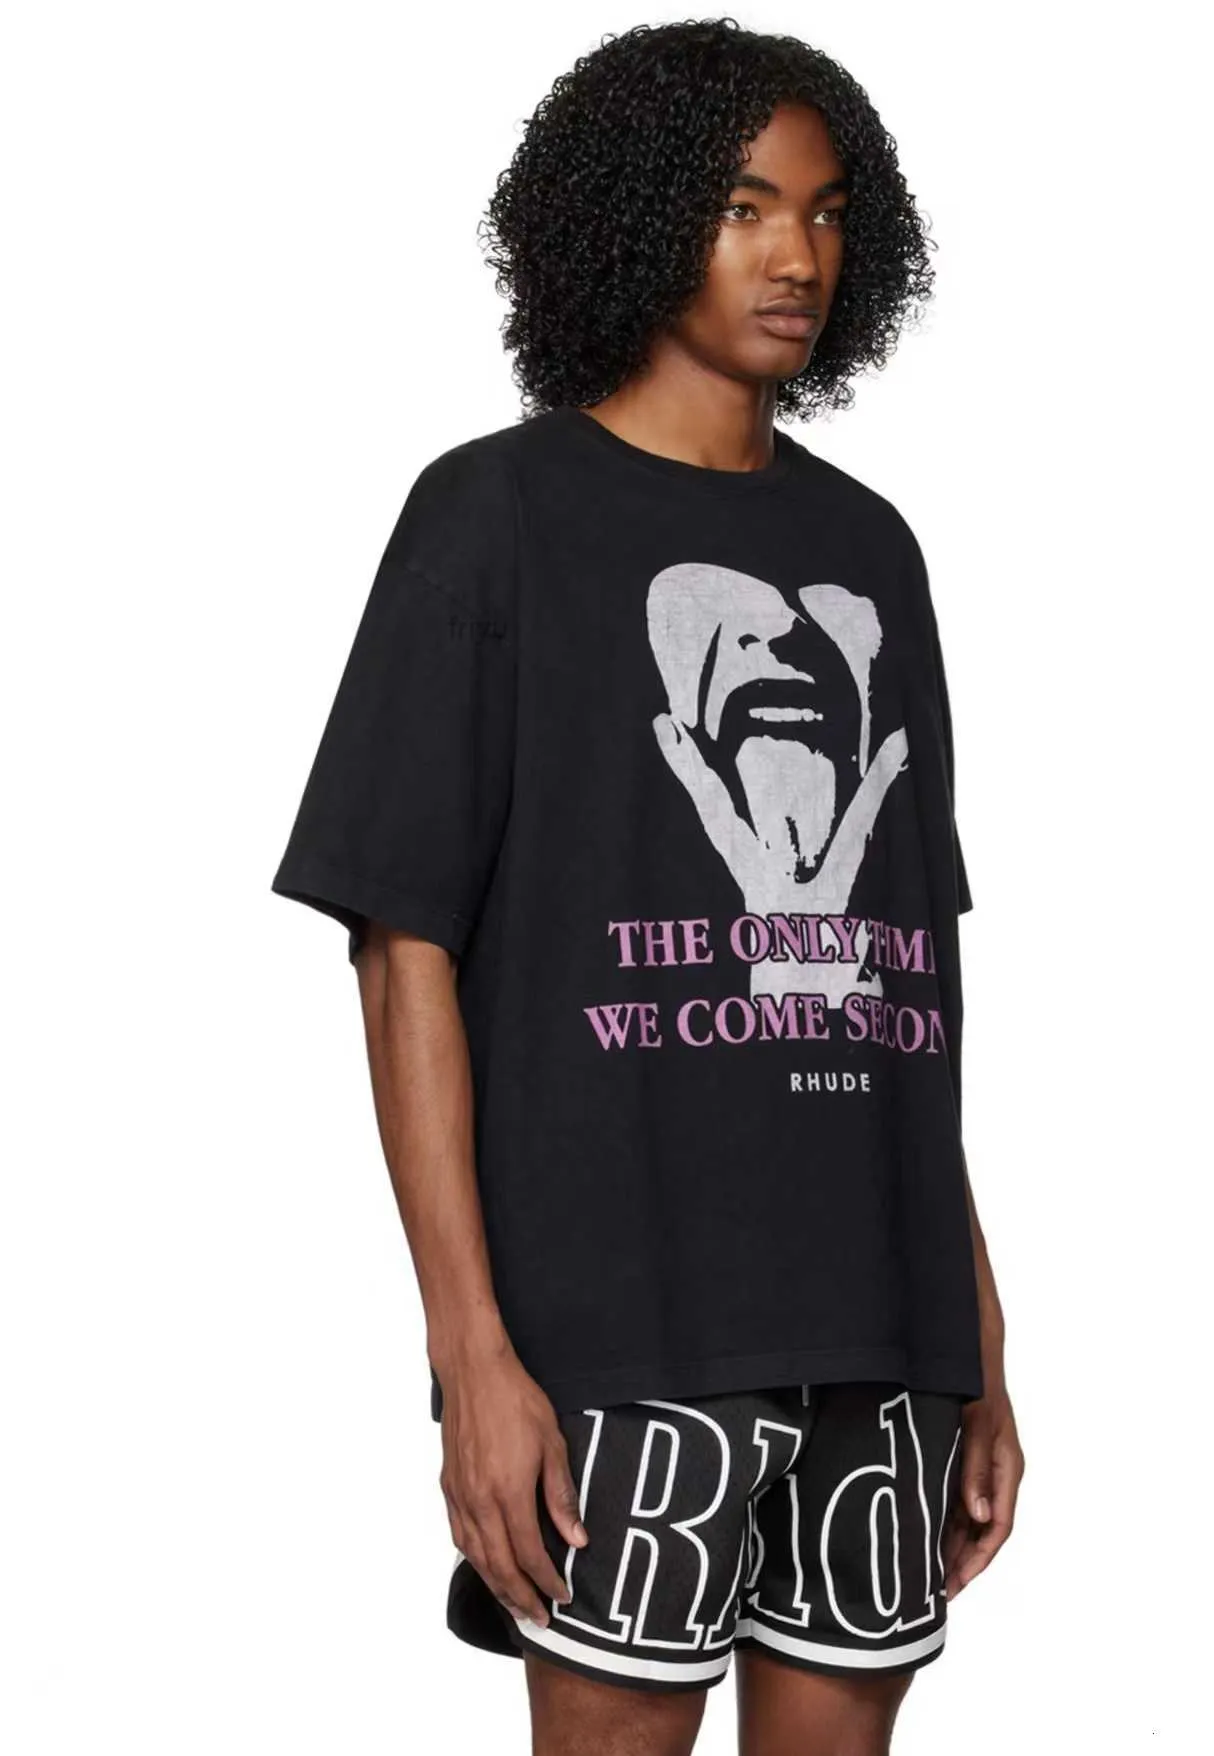 Tasarımcı Moda Giyim Tees Tshirts Rhude, kendi kendine taşıyan komik figürler açısından ikinci geliyor Modeli High Street Tasarım Bir niş tişört toptan